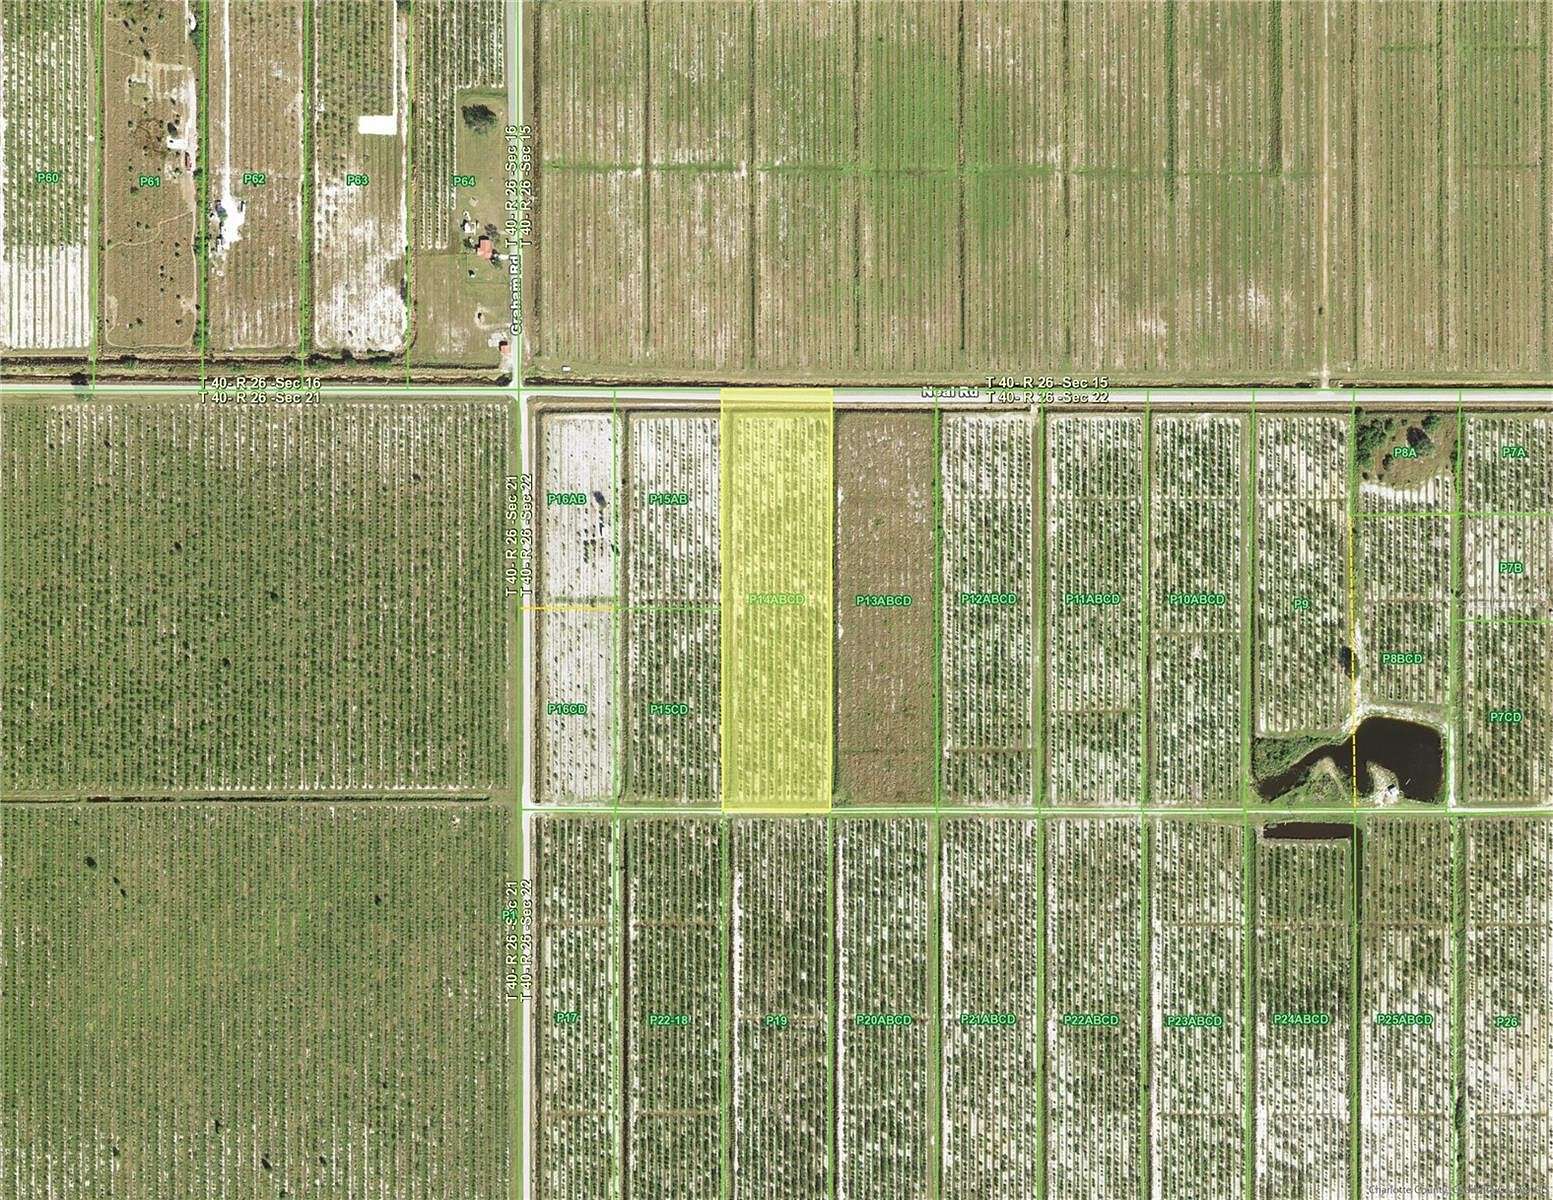 10 Acres of Land for Sale in Punta Gorda, Florida